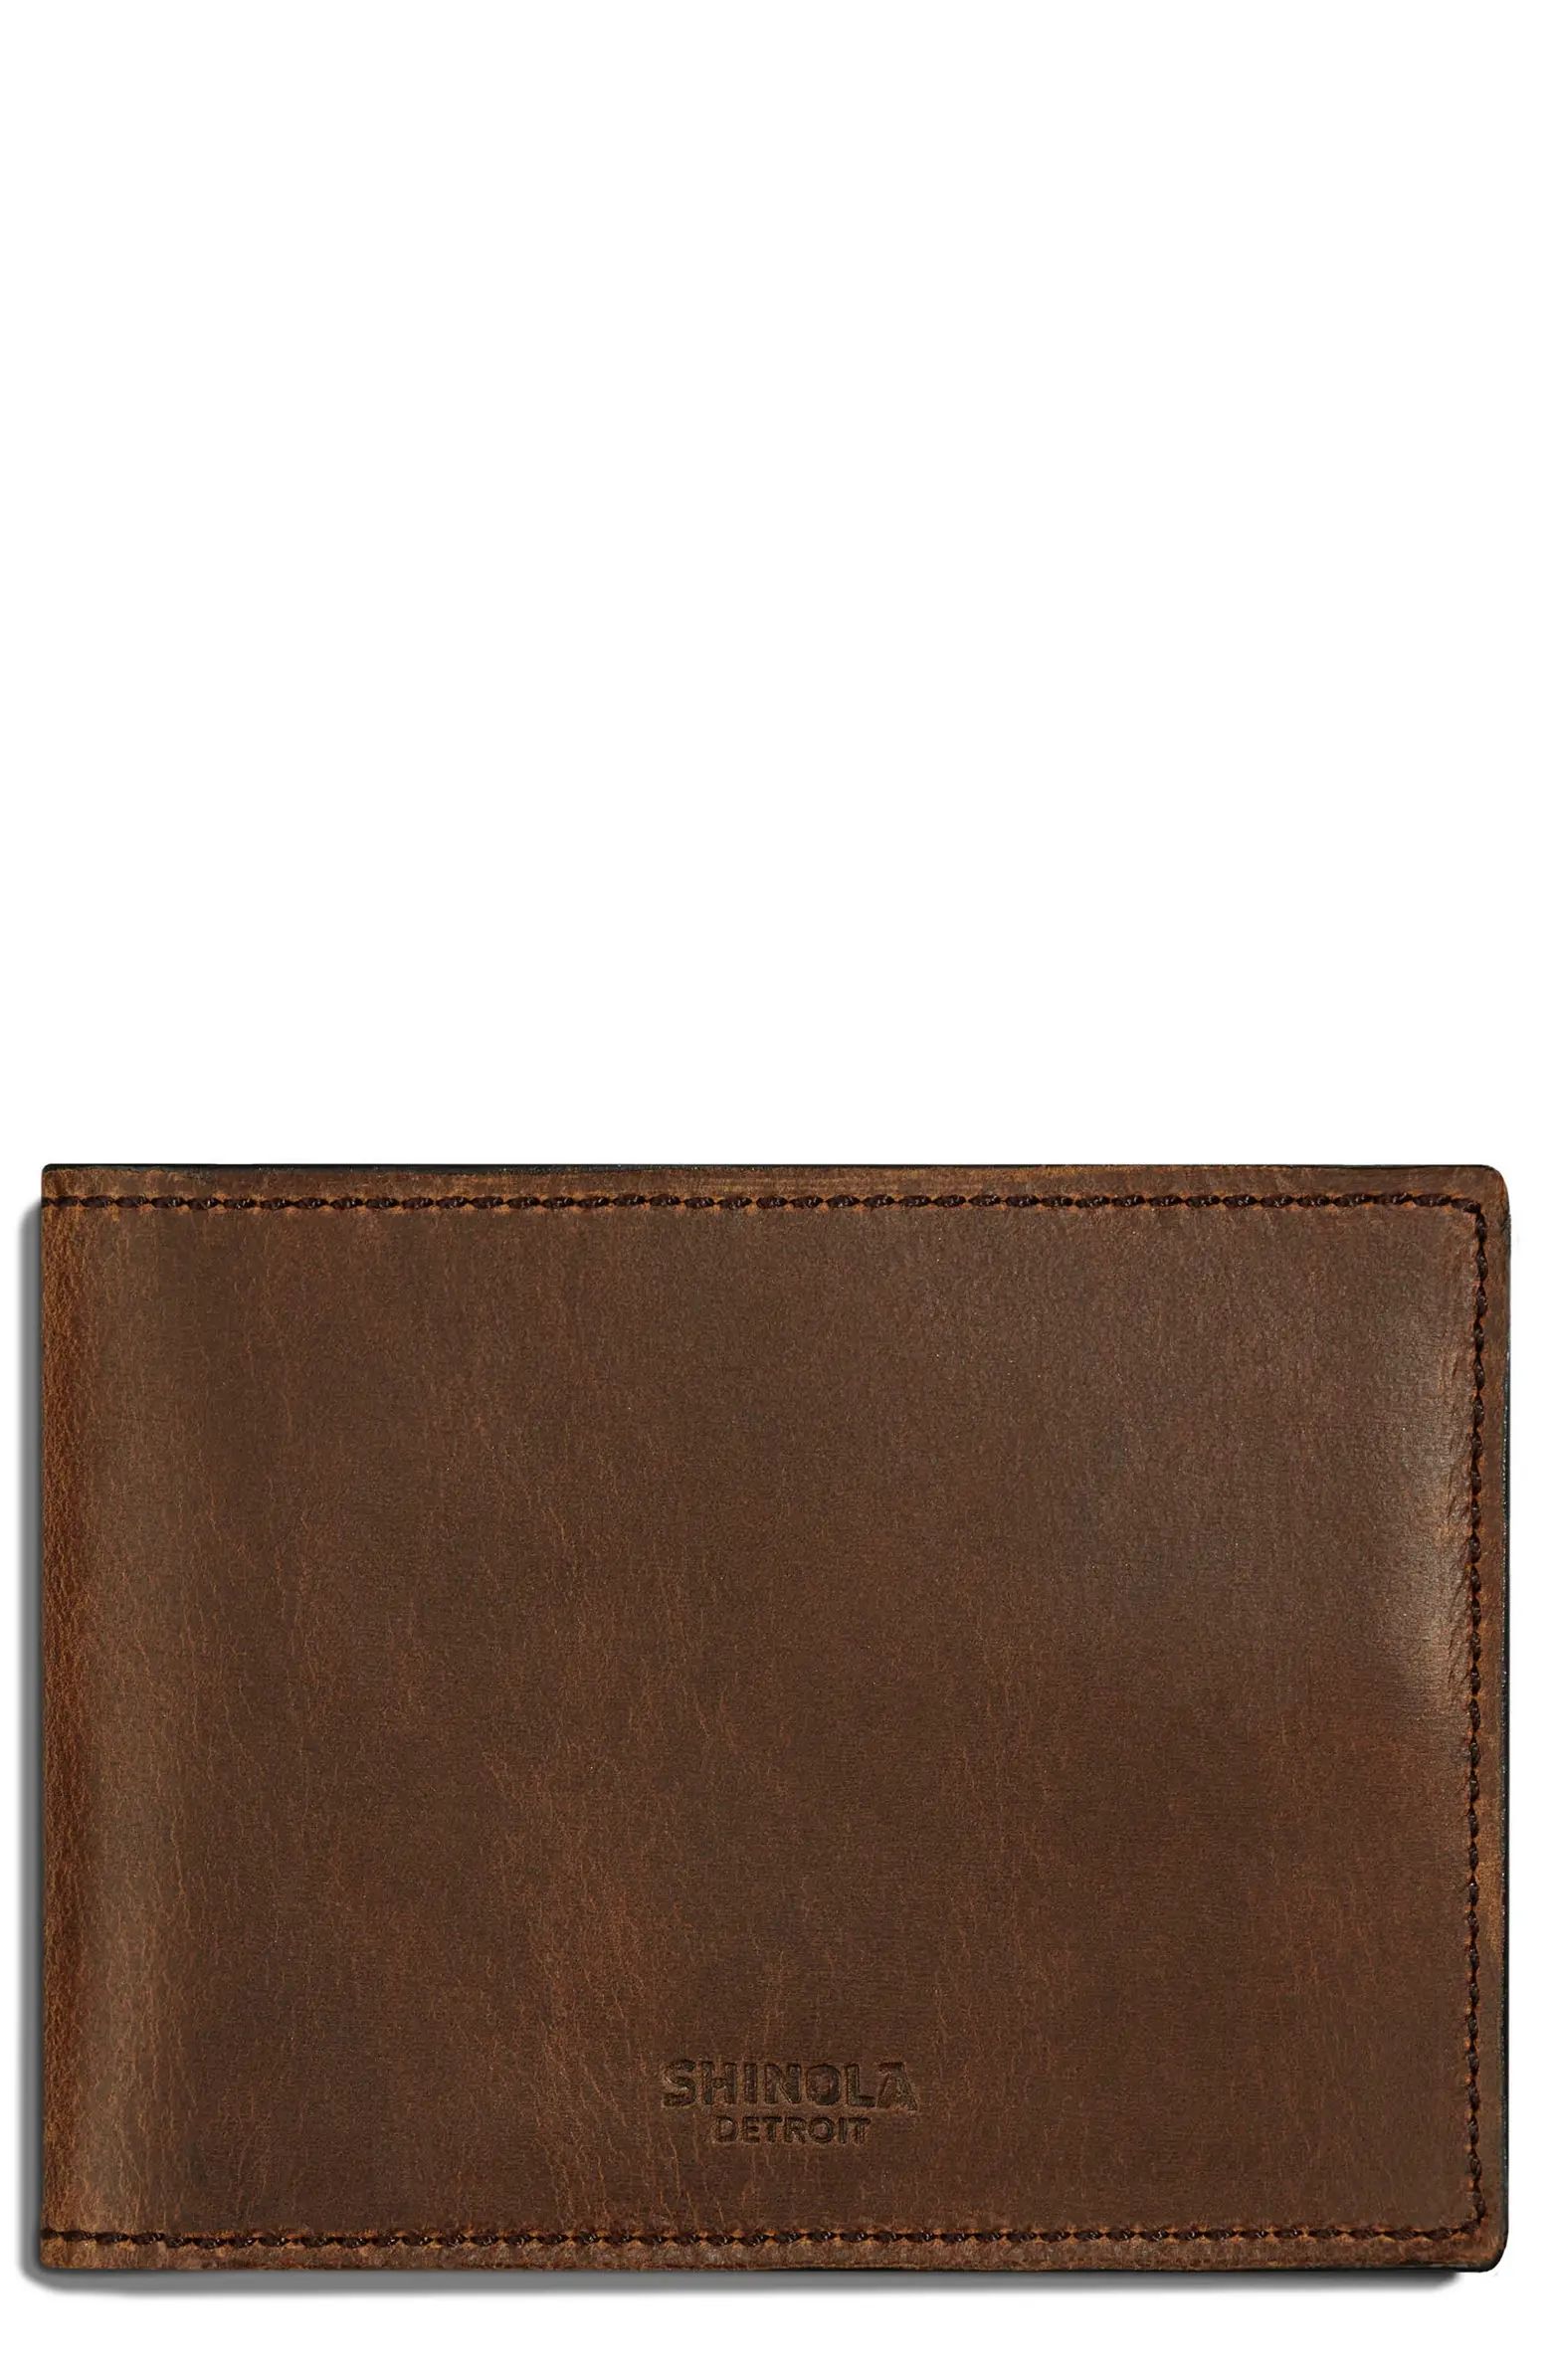 Navigator Leather Wallet | Nordstrom